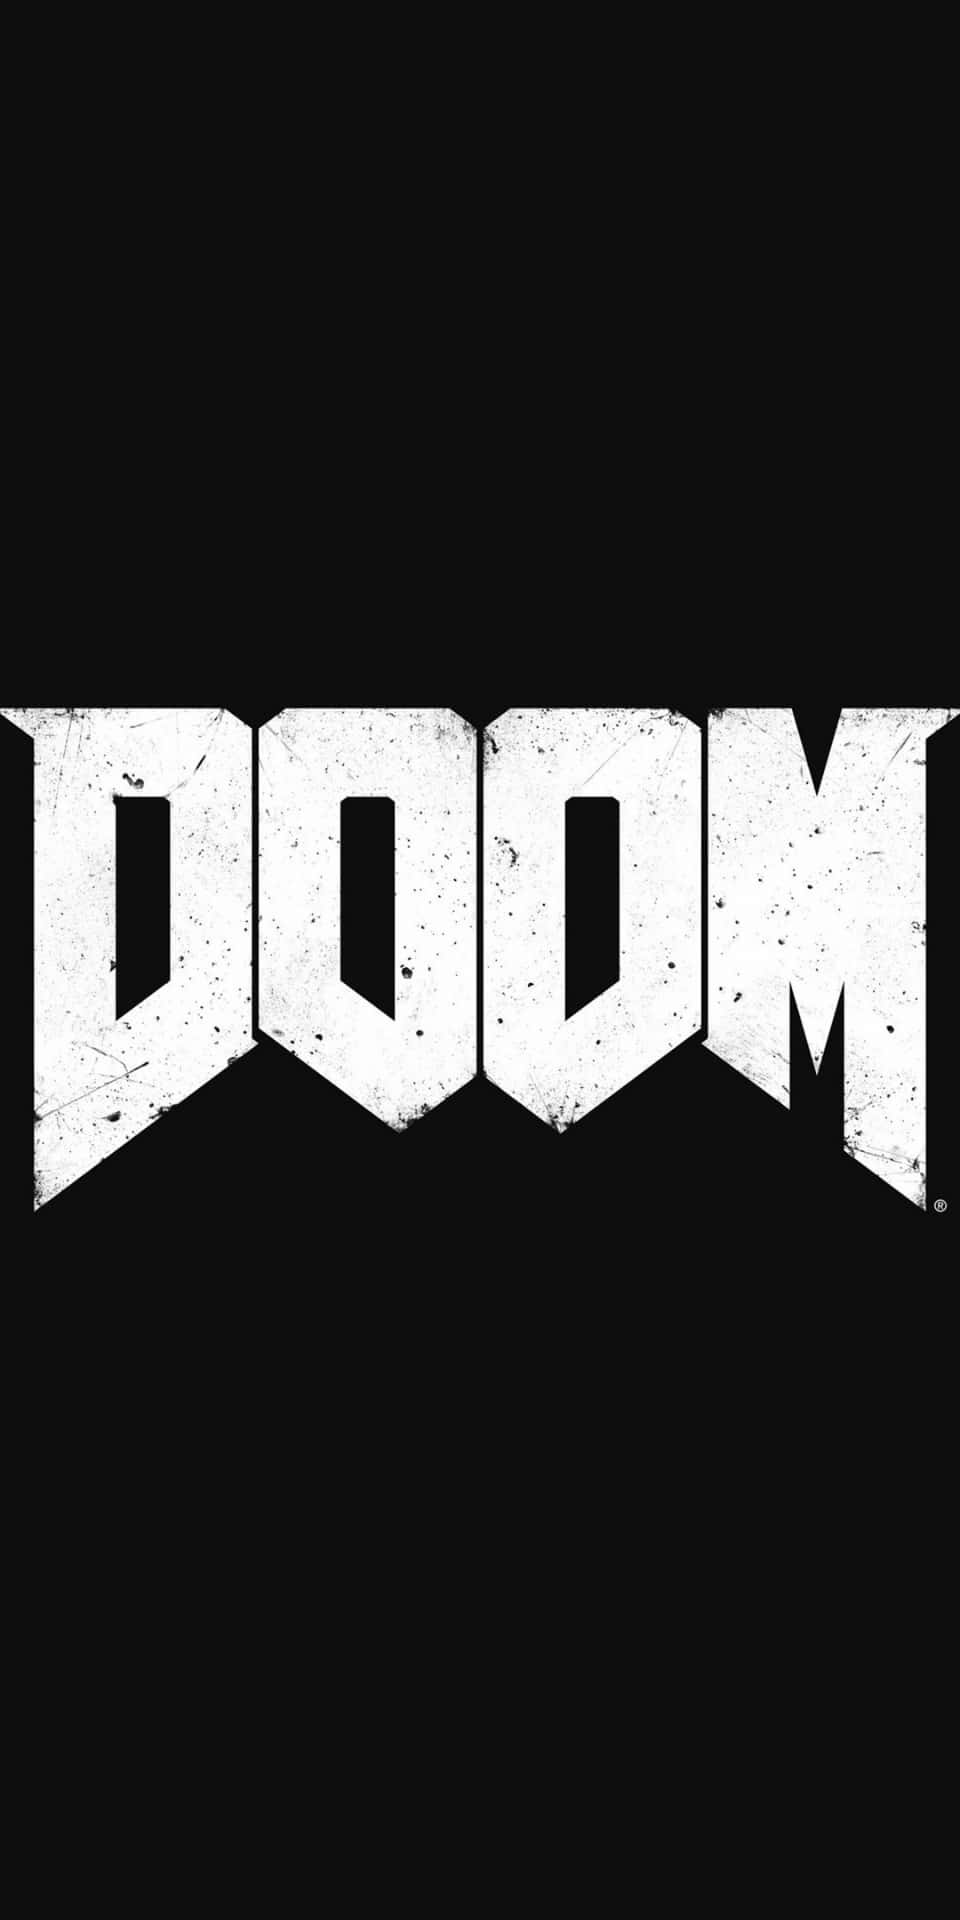 Experimentaun Emocionante Rendimiento De Juego Con El Pixel 3 Doom.